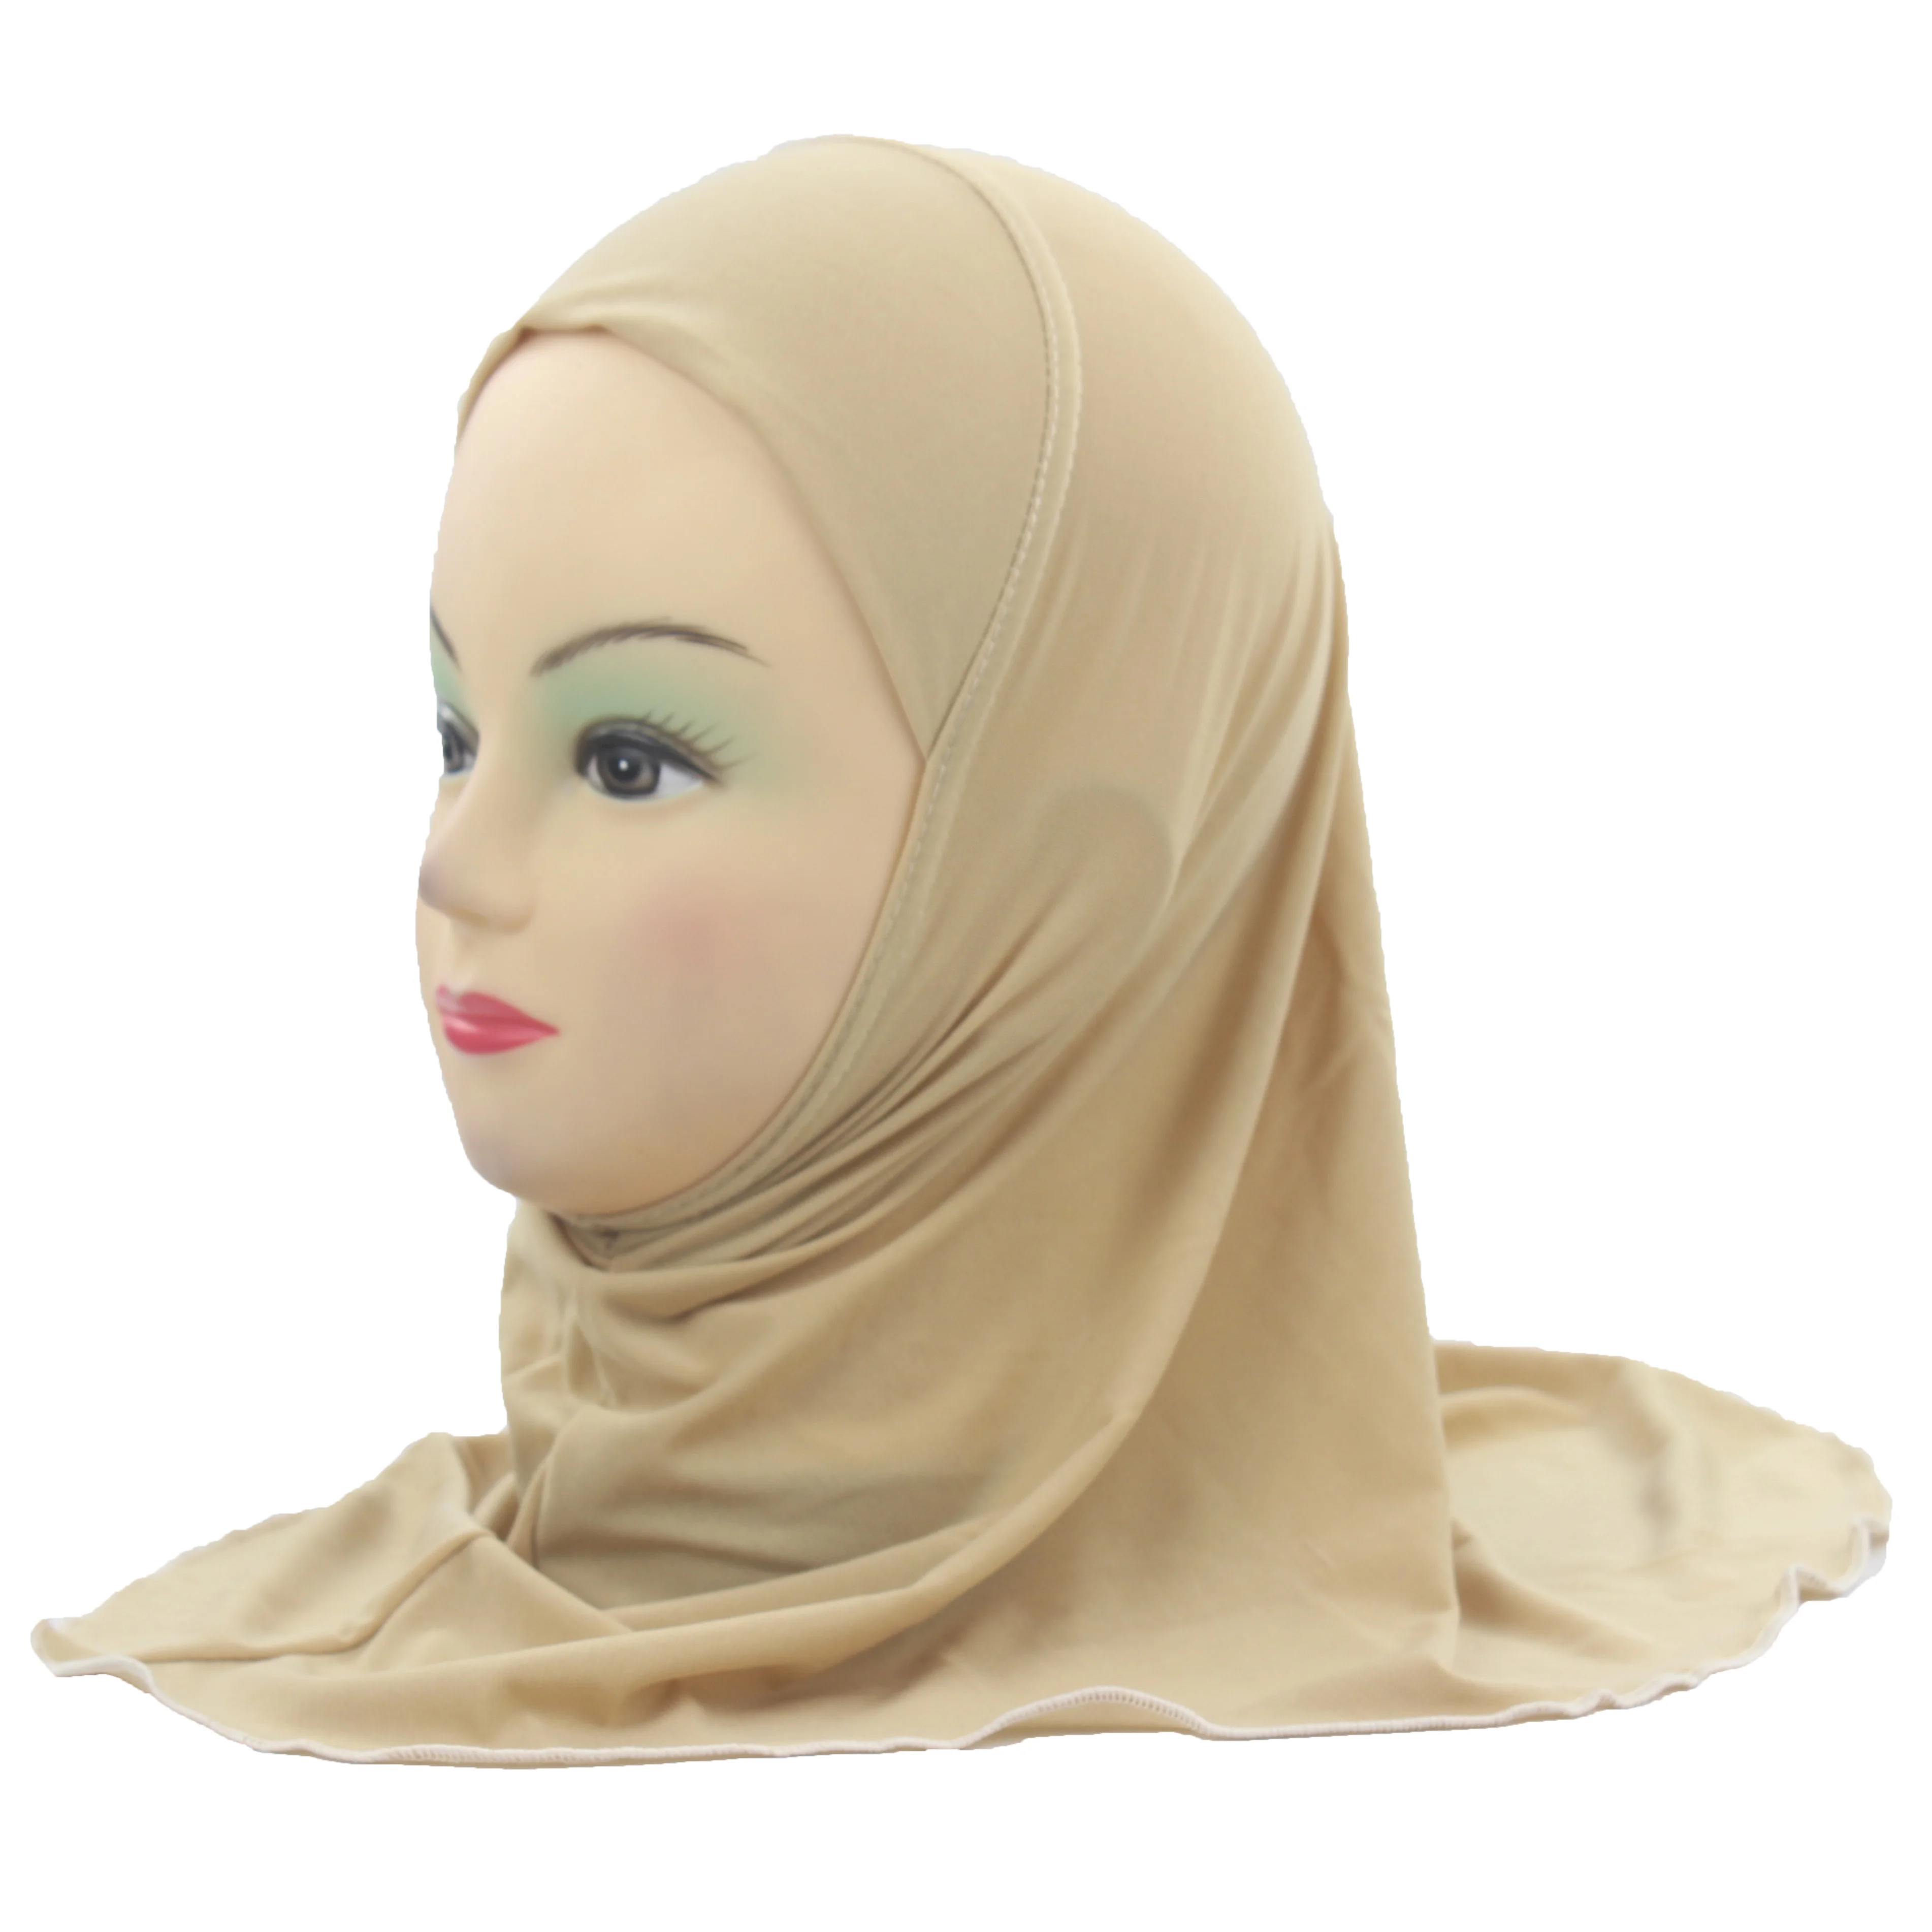 Мусульманский хиджаб для детей, исламский шарф, шали, без украшений, мягкий и эластичный материал для девочек 2-7 лет